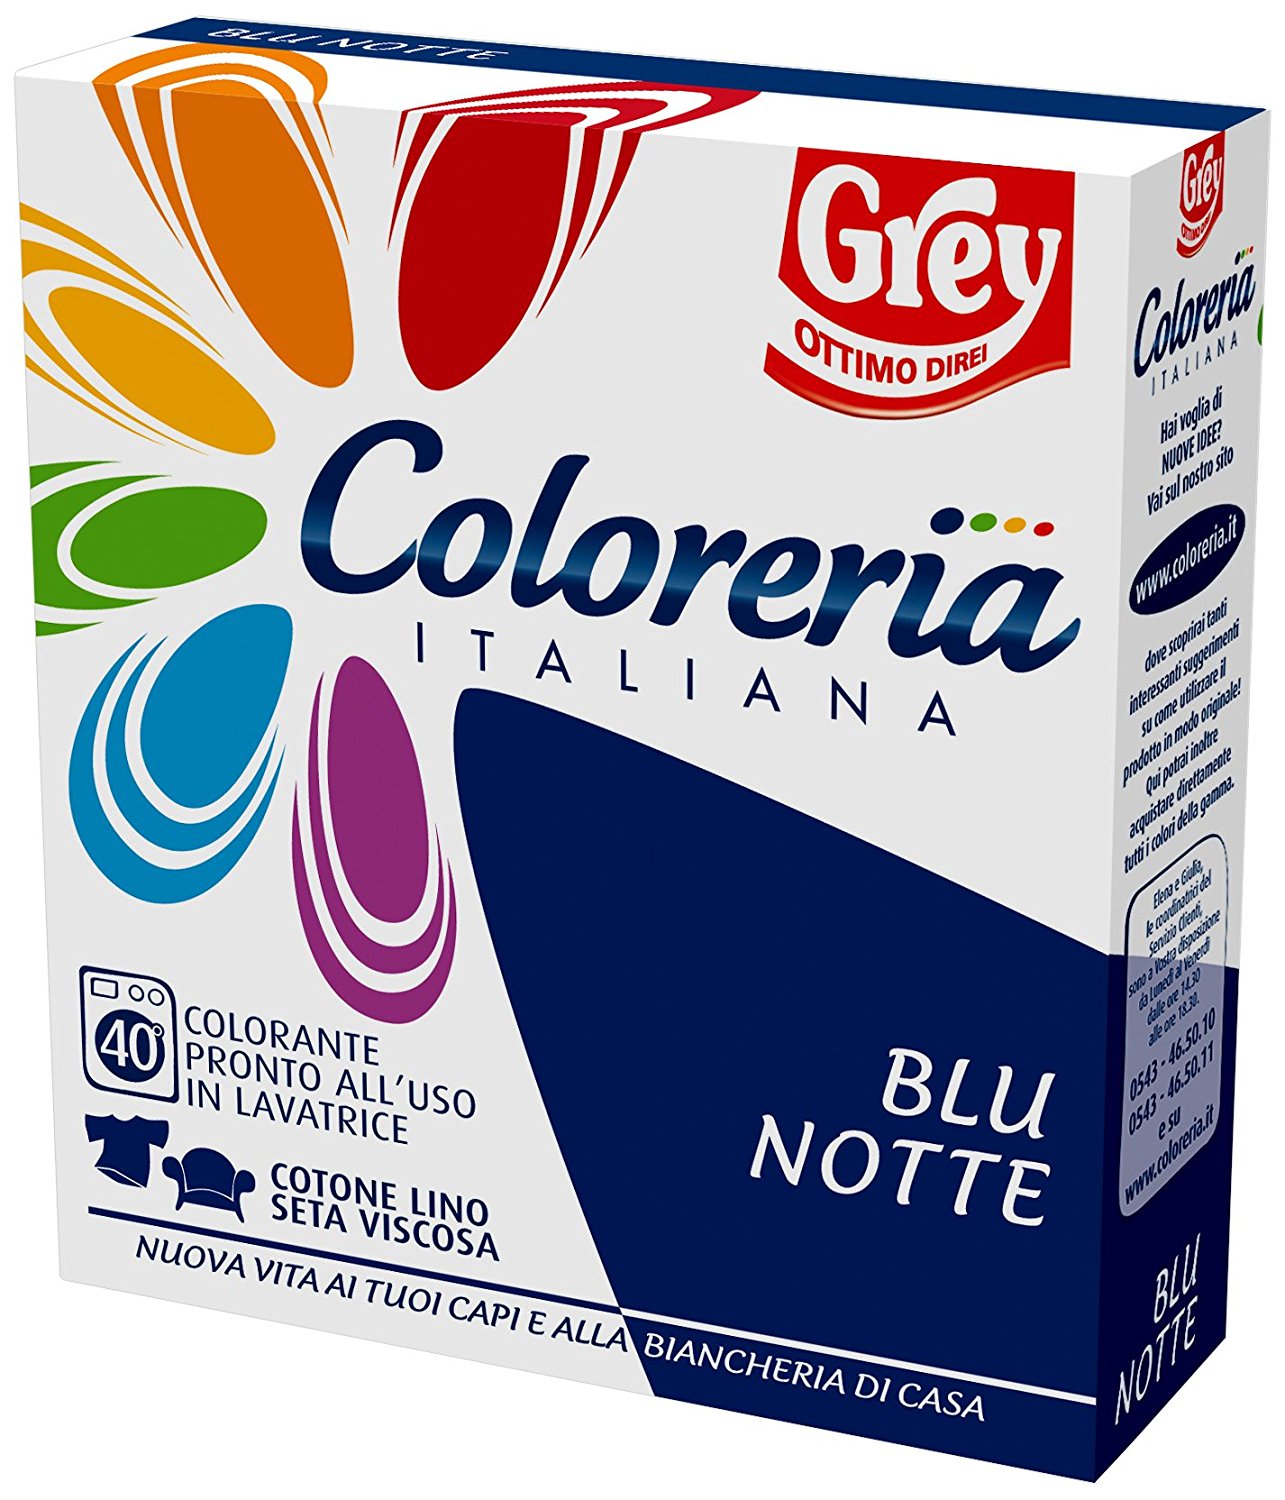 Coloreria Italiana - Il colore Blu Notte conferisce grande